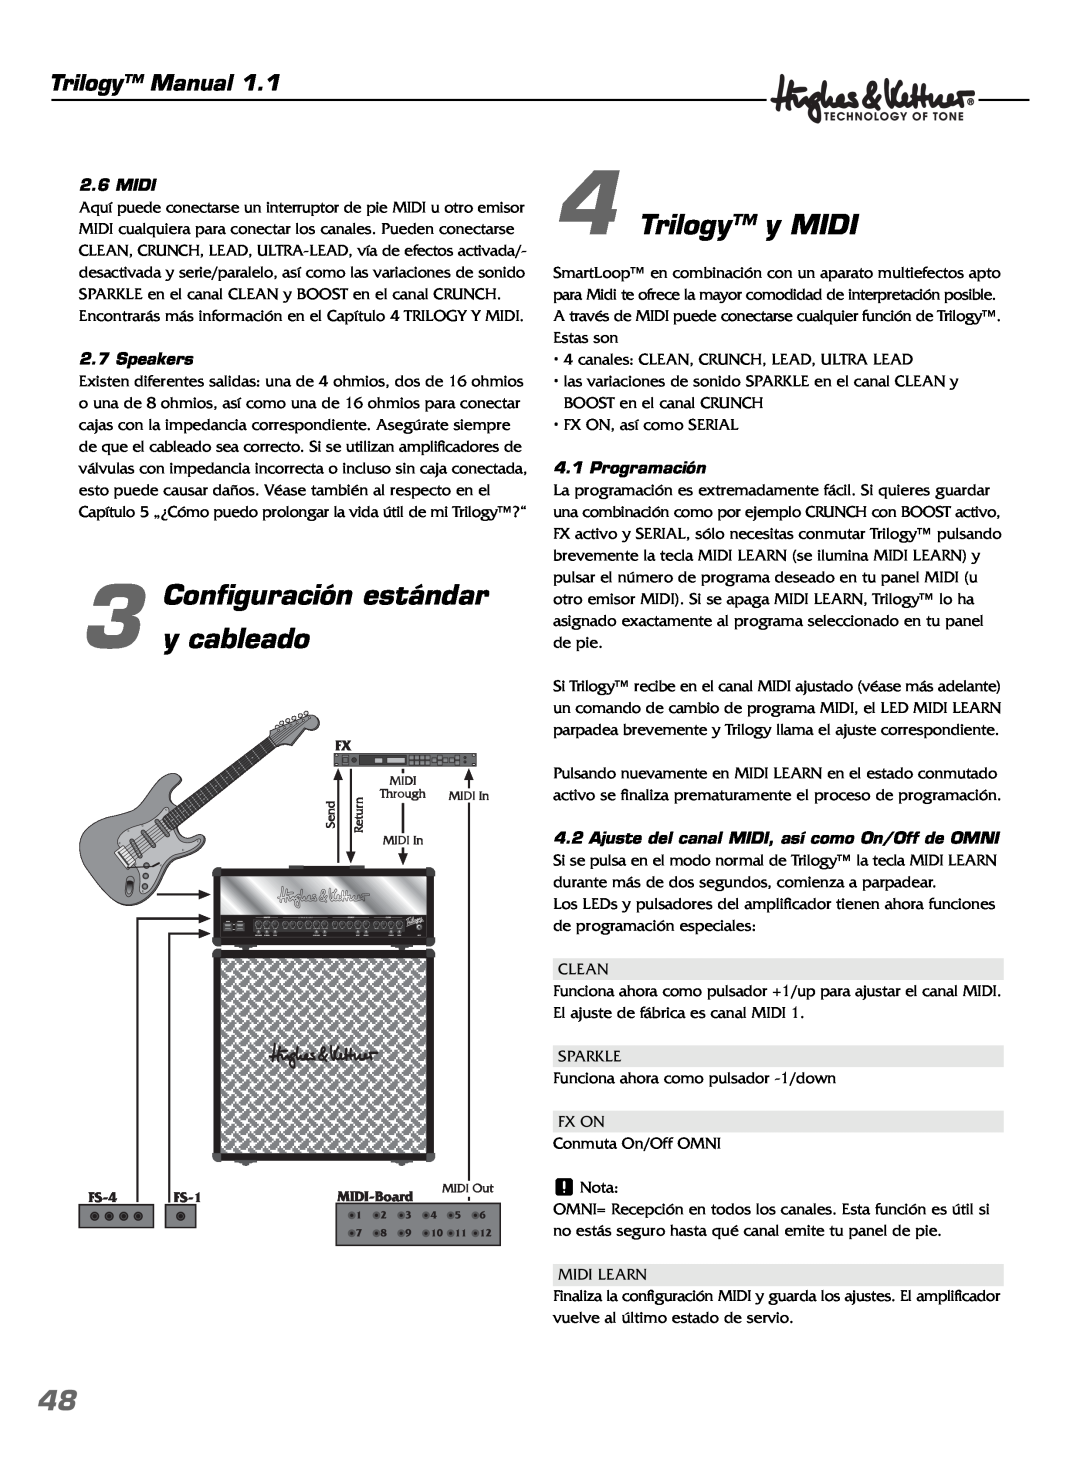 Hughes & Kettner TrilogyTM manual Configuración estándar 3 y cableado, Trilogy y MIDI, Trilogy Manual, Midi, Speakers 